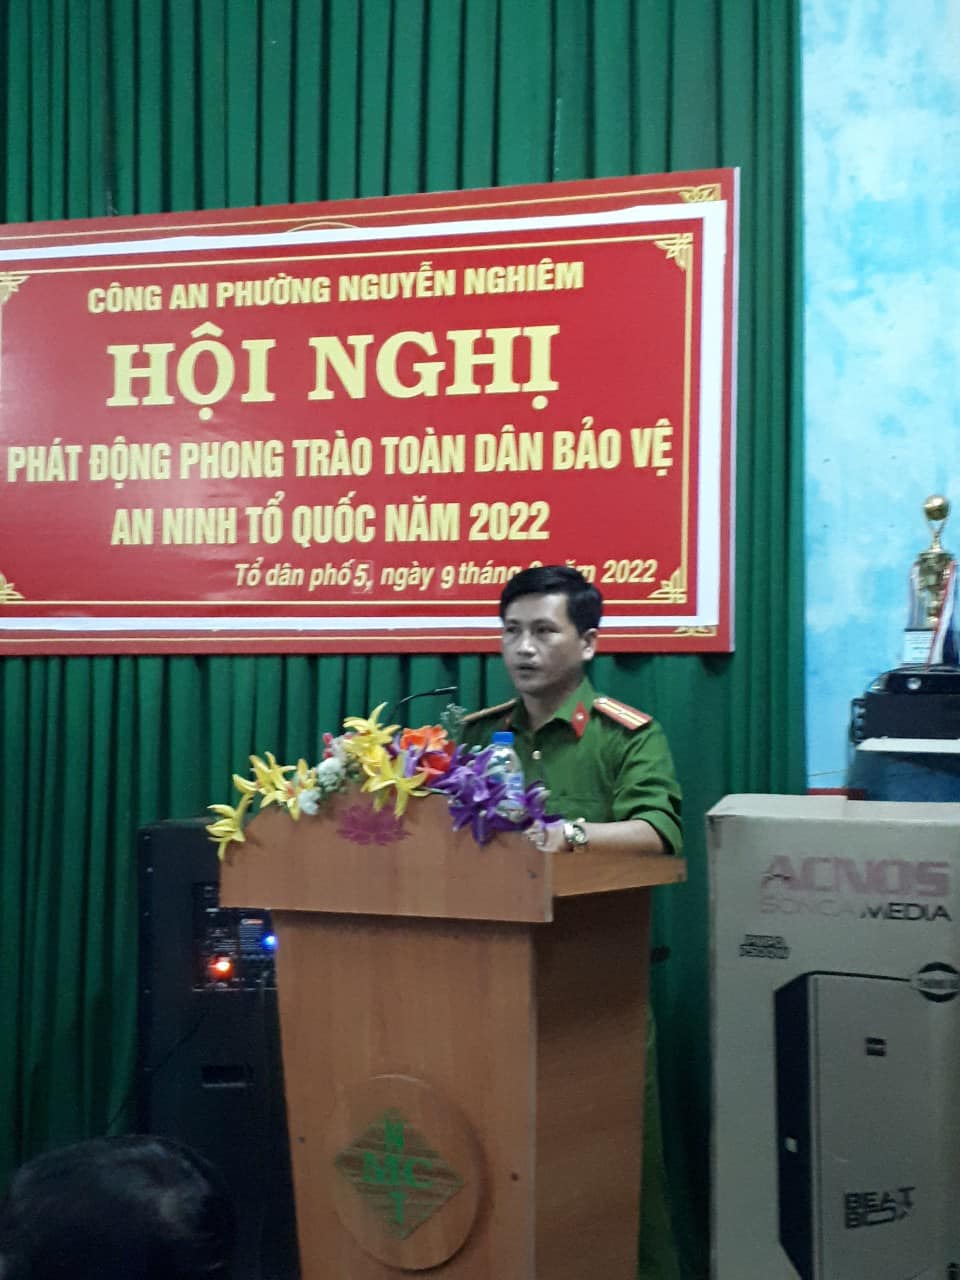 Công an Phường Nguyễn Nghiêm tổ chức tuyên truyền, phát động phong trào toàn dân bảo vệ an ninh Tổ quốc